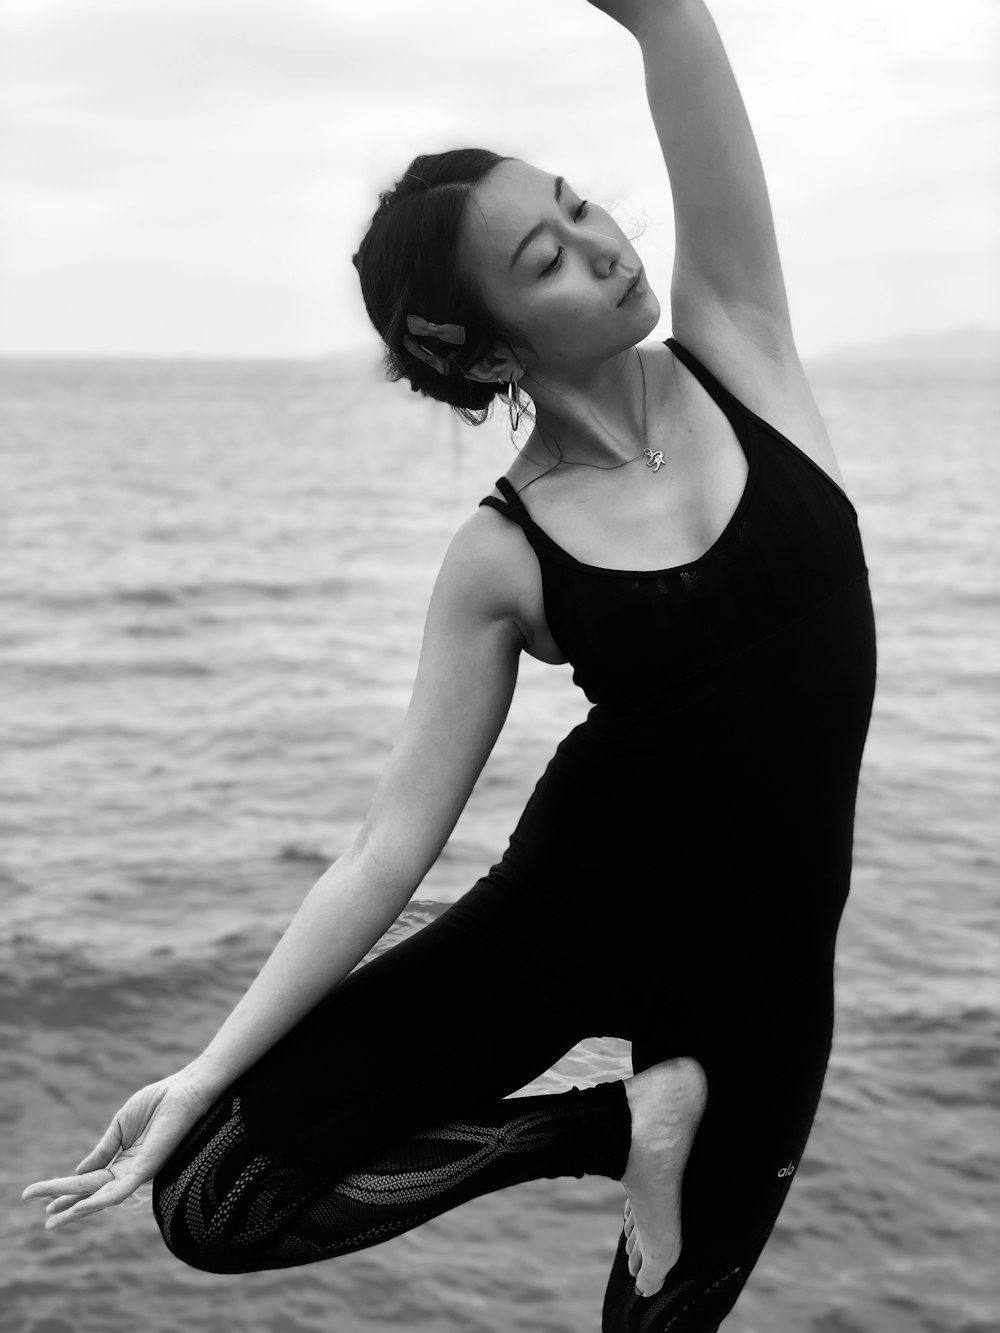 Frau in Yoga-Pose